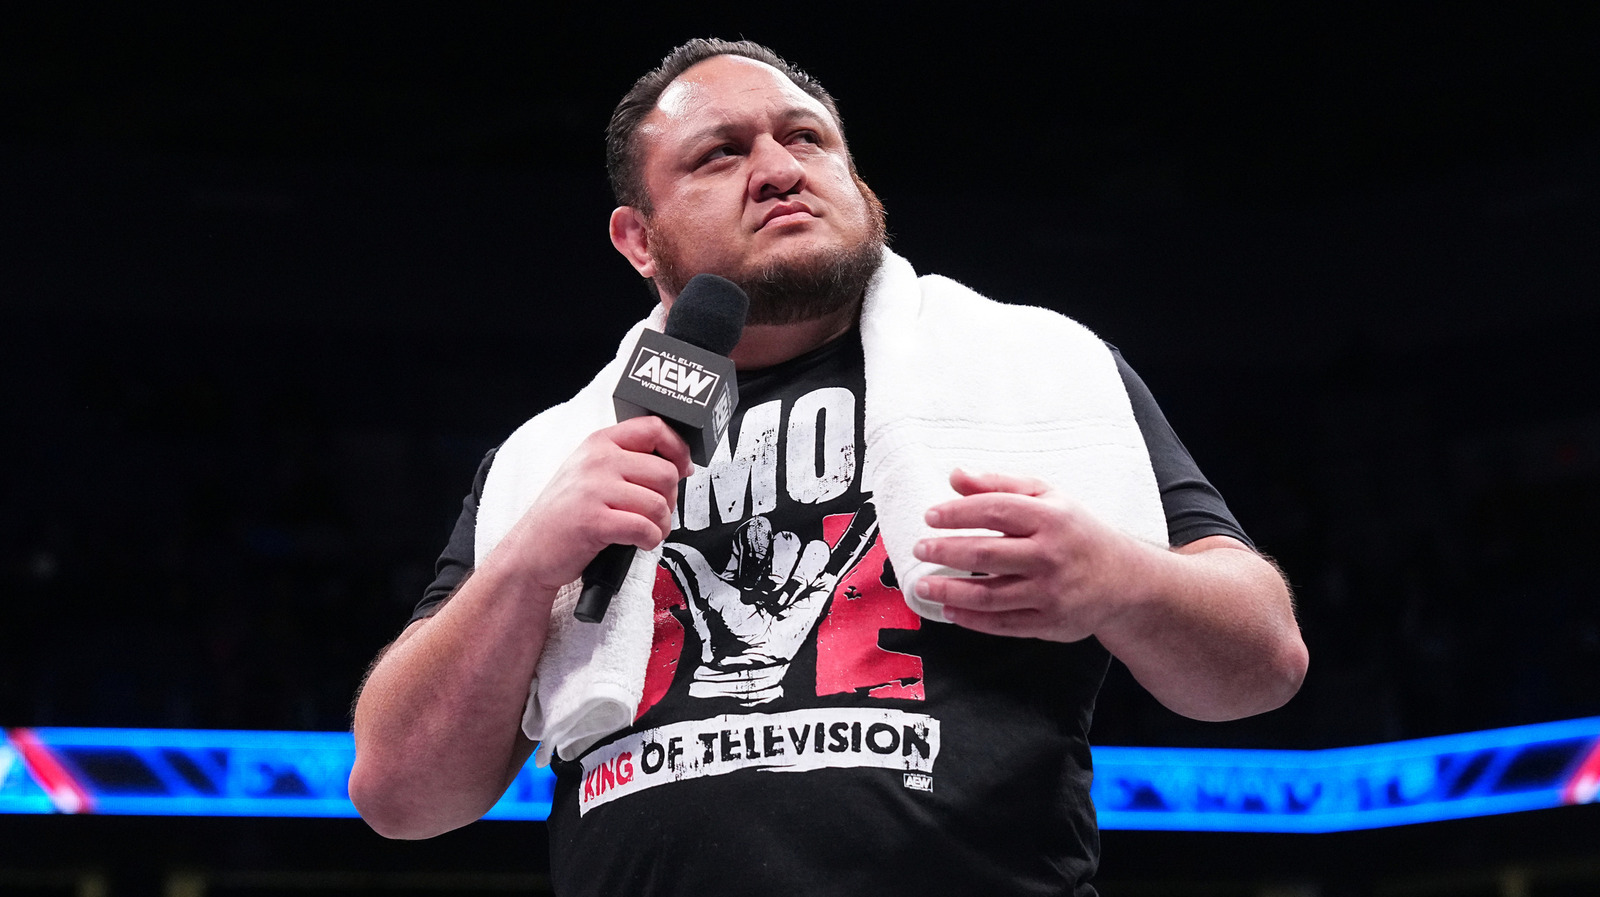 El nuevo campeón mundial de AEW, Samoa Joe, confirma que el cinturón del título tendrá un nuevo diseño